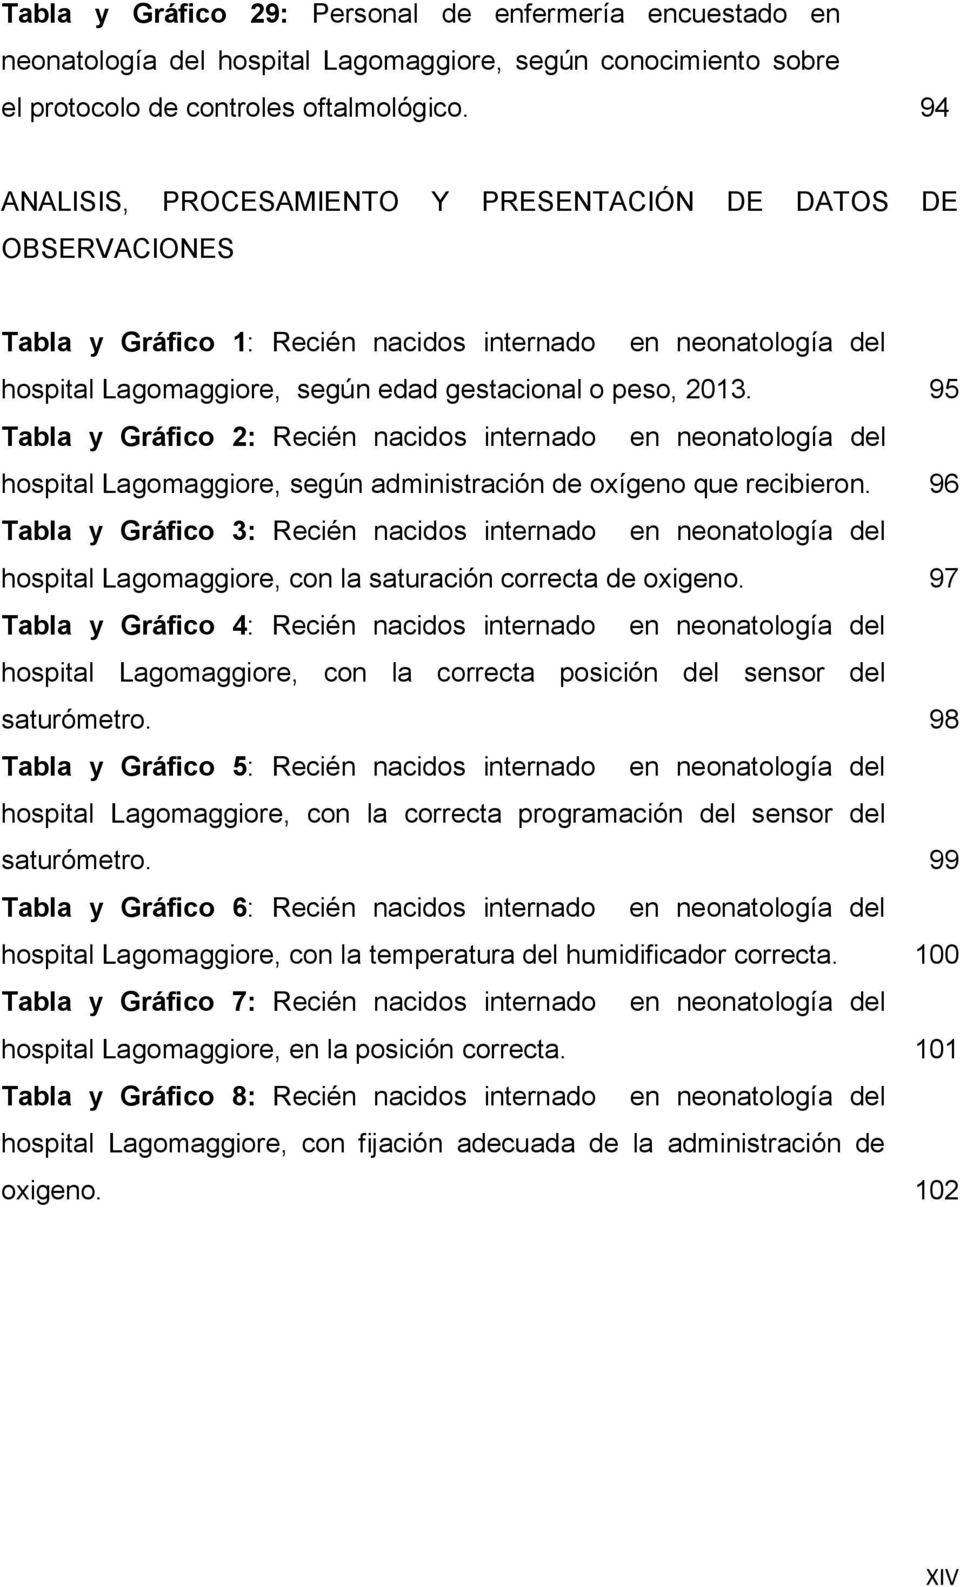 95 Tabla y Gráfico 2: Recién nacidos internado en neonatología del hospital Lagomaggiore, según administración de oxígeno que recibieron.